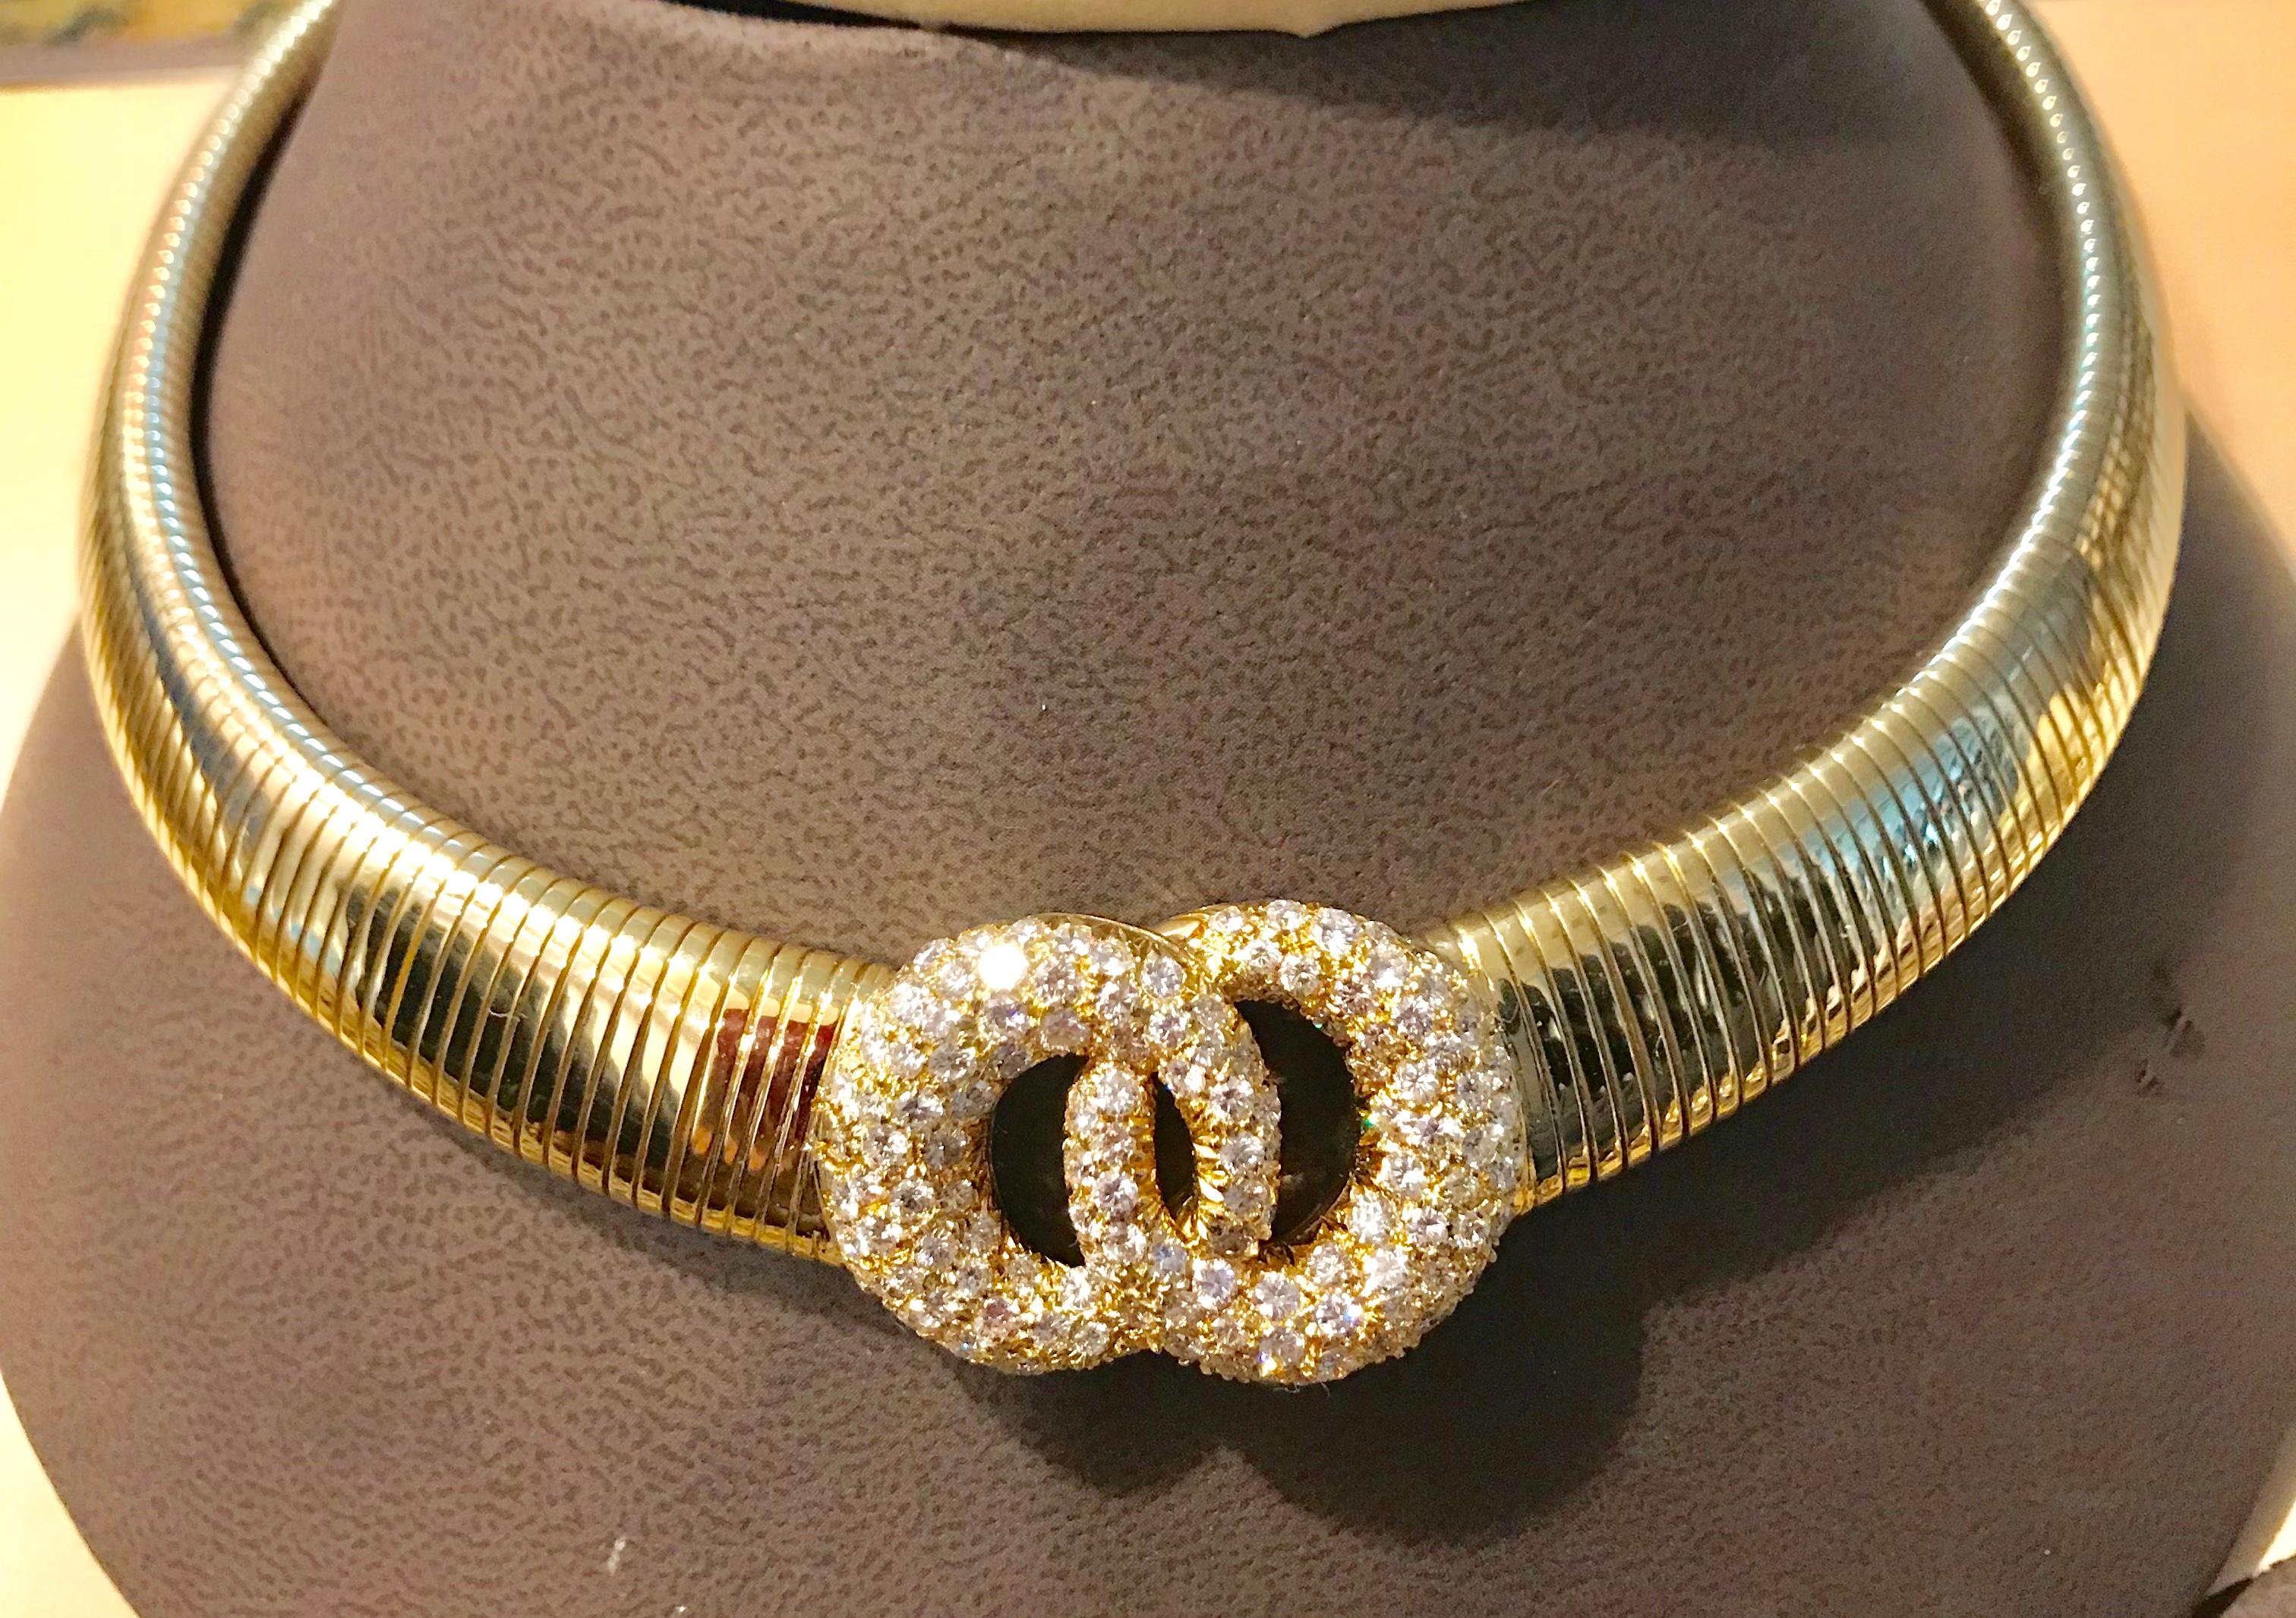 Pièce prestigieuse de Van Cleef & Arpels, ce collier flexible est pavé d'une opulence de diamants blancs, d'un poids d'environ 6  carats ,  tous finement montés en 
Or jaune 18 carats. Le poids du collier est de 100 g.
La plaque centrale est sertie